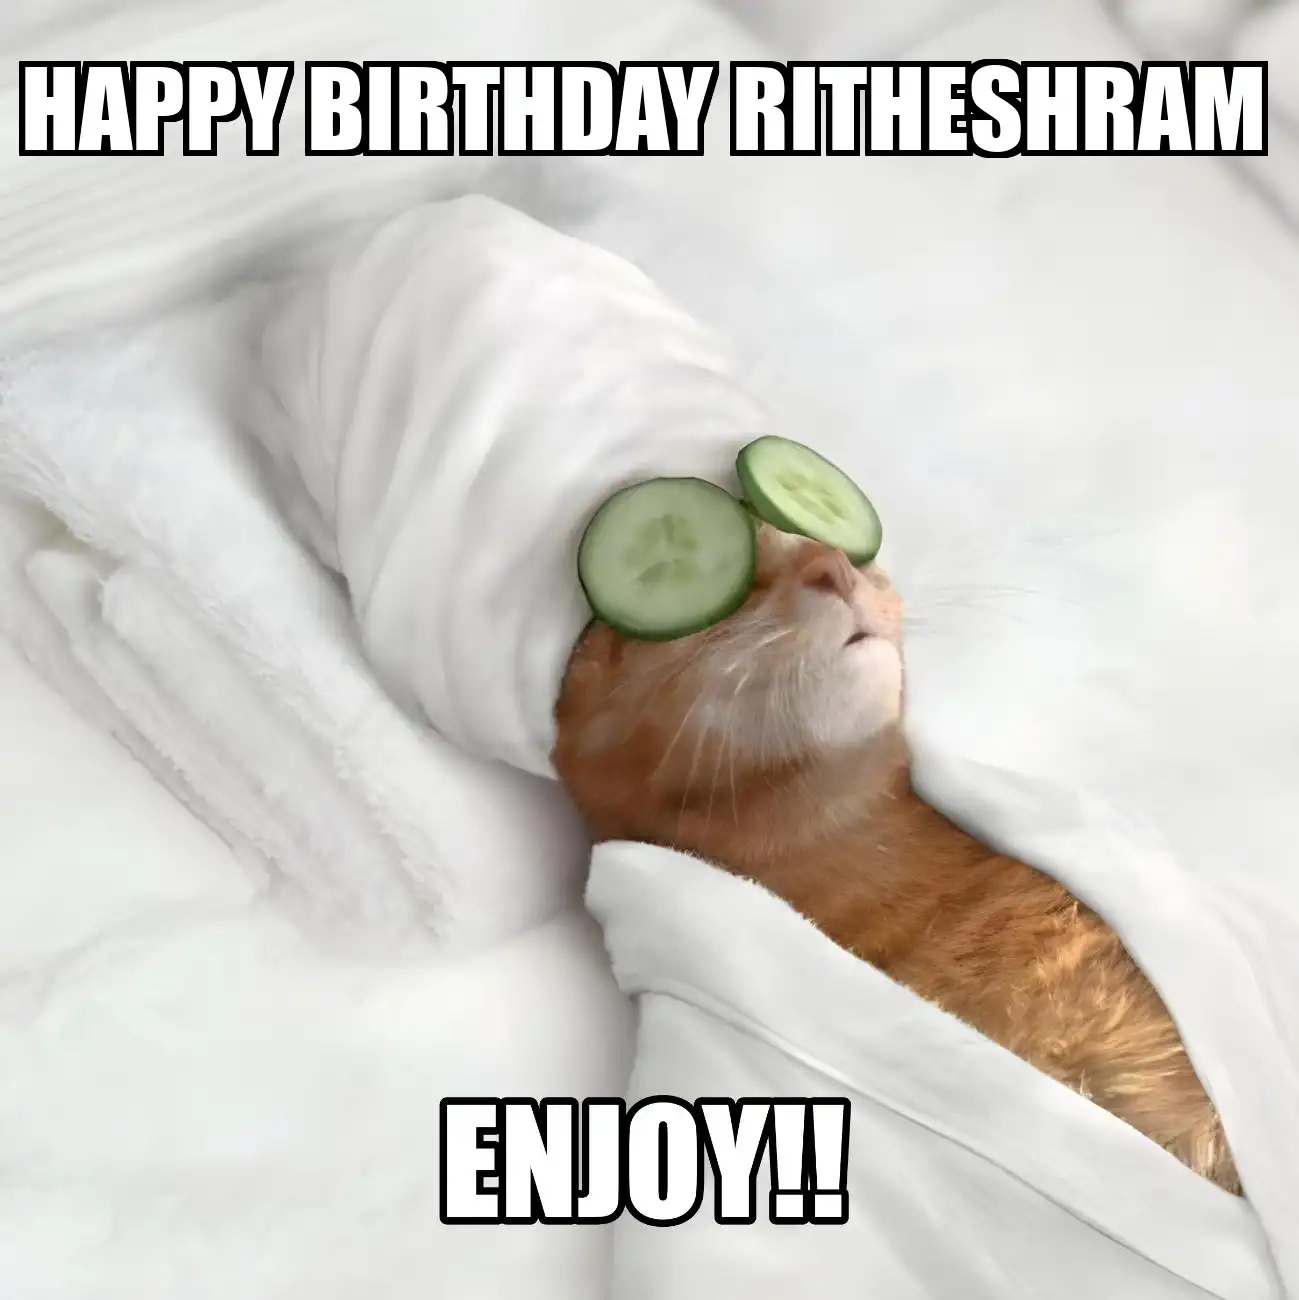 Happy Birthday Ritheshram Enjoy Cat Meme